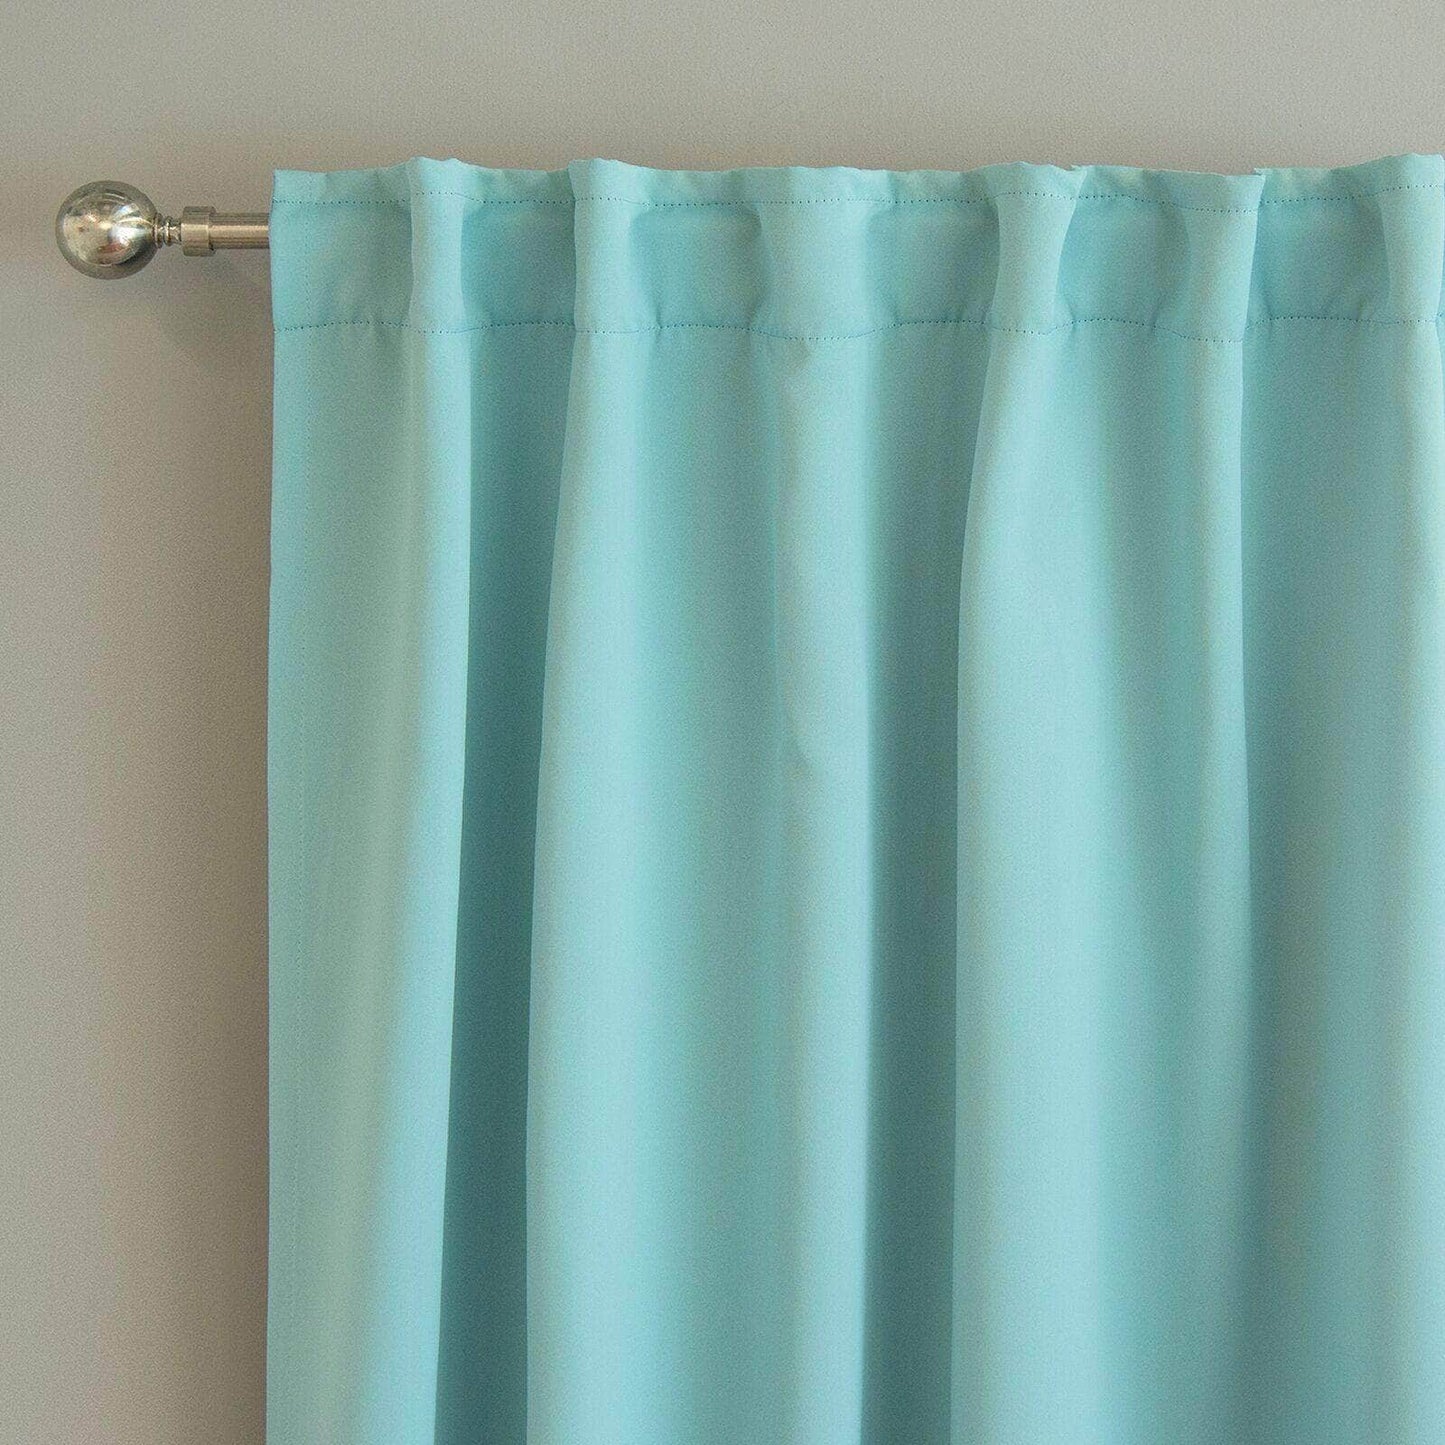 Penguin Group Curtains 250 H × 140 W (cm) Turquoise Velvet RikTig curtain